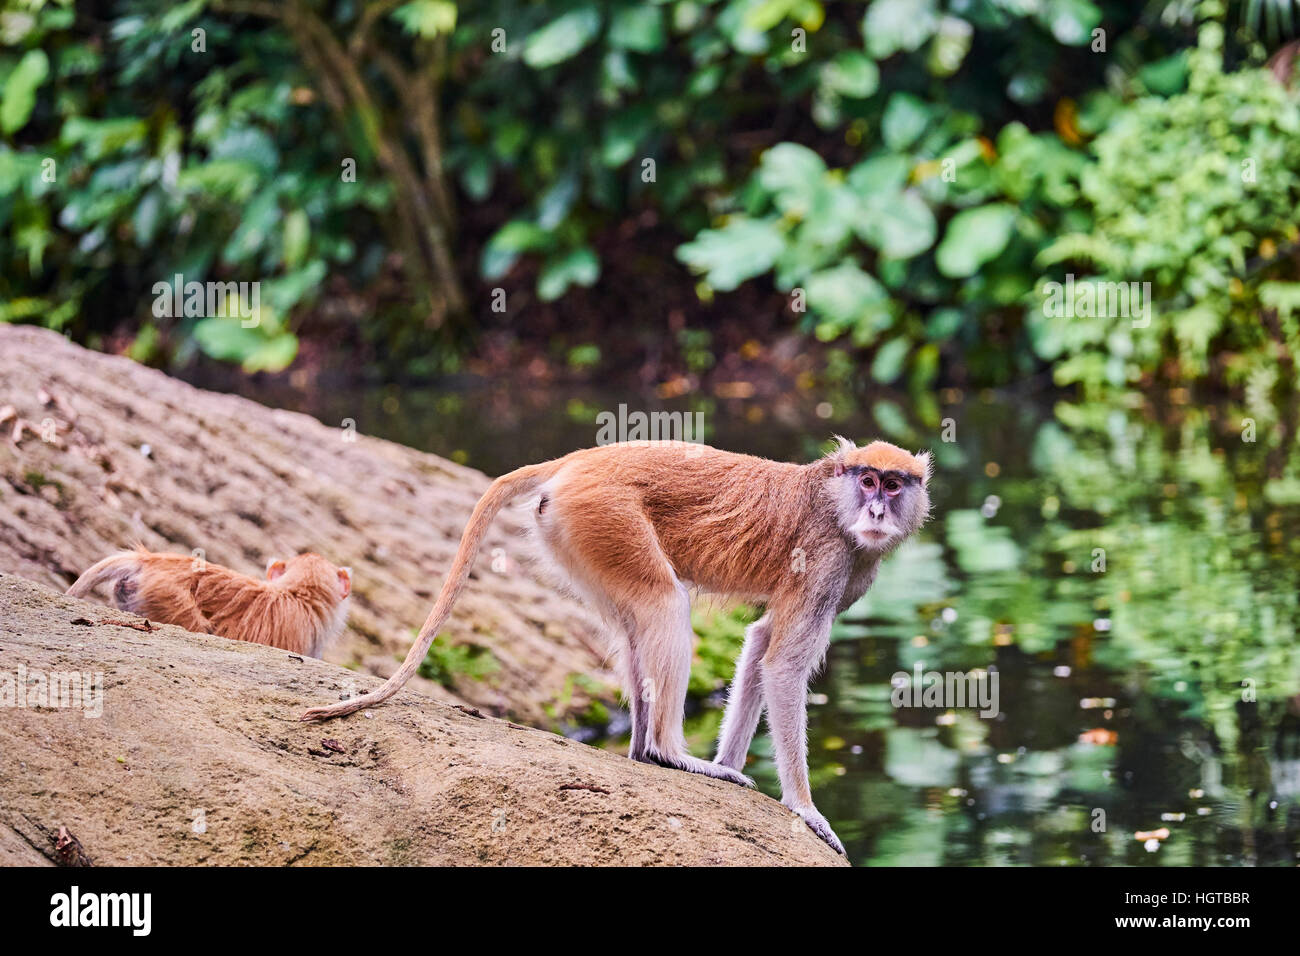 Singapore, il Giardino Zoologico di Singapore, Mandai Zoo, langur monkey Foto Stock